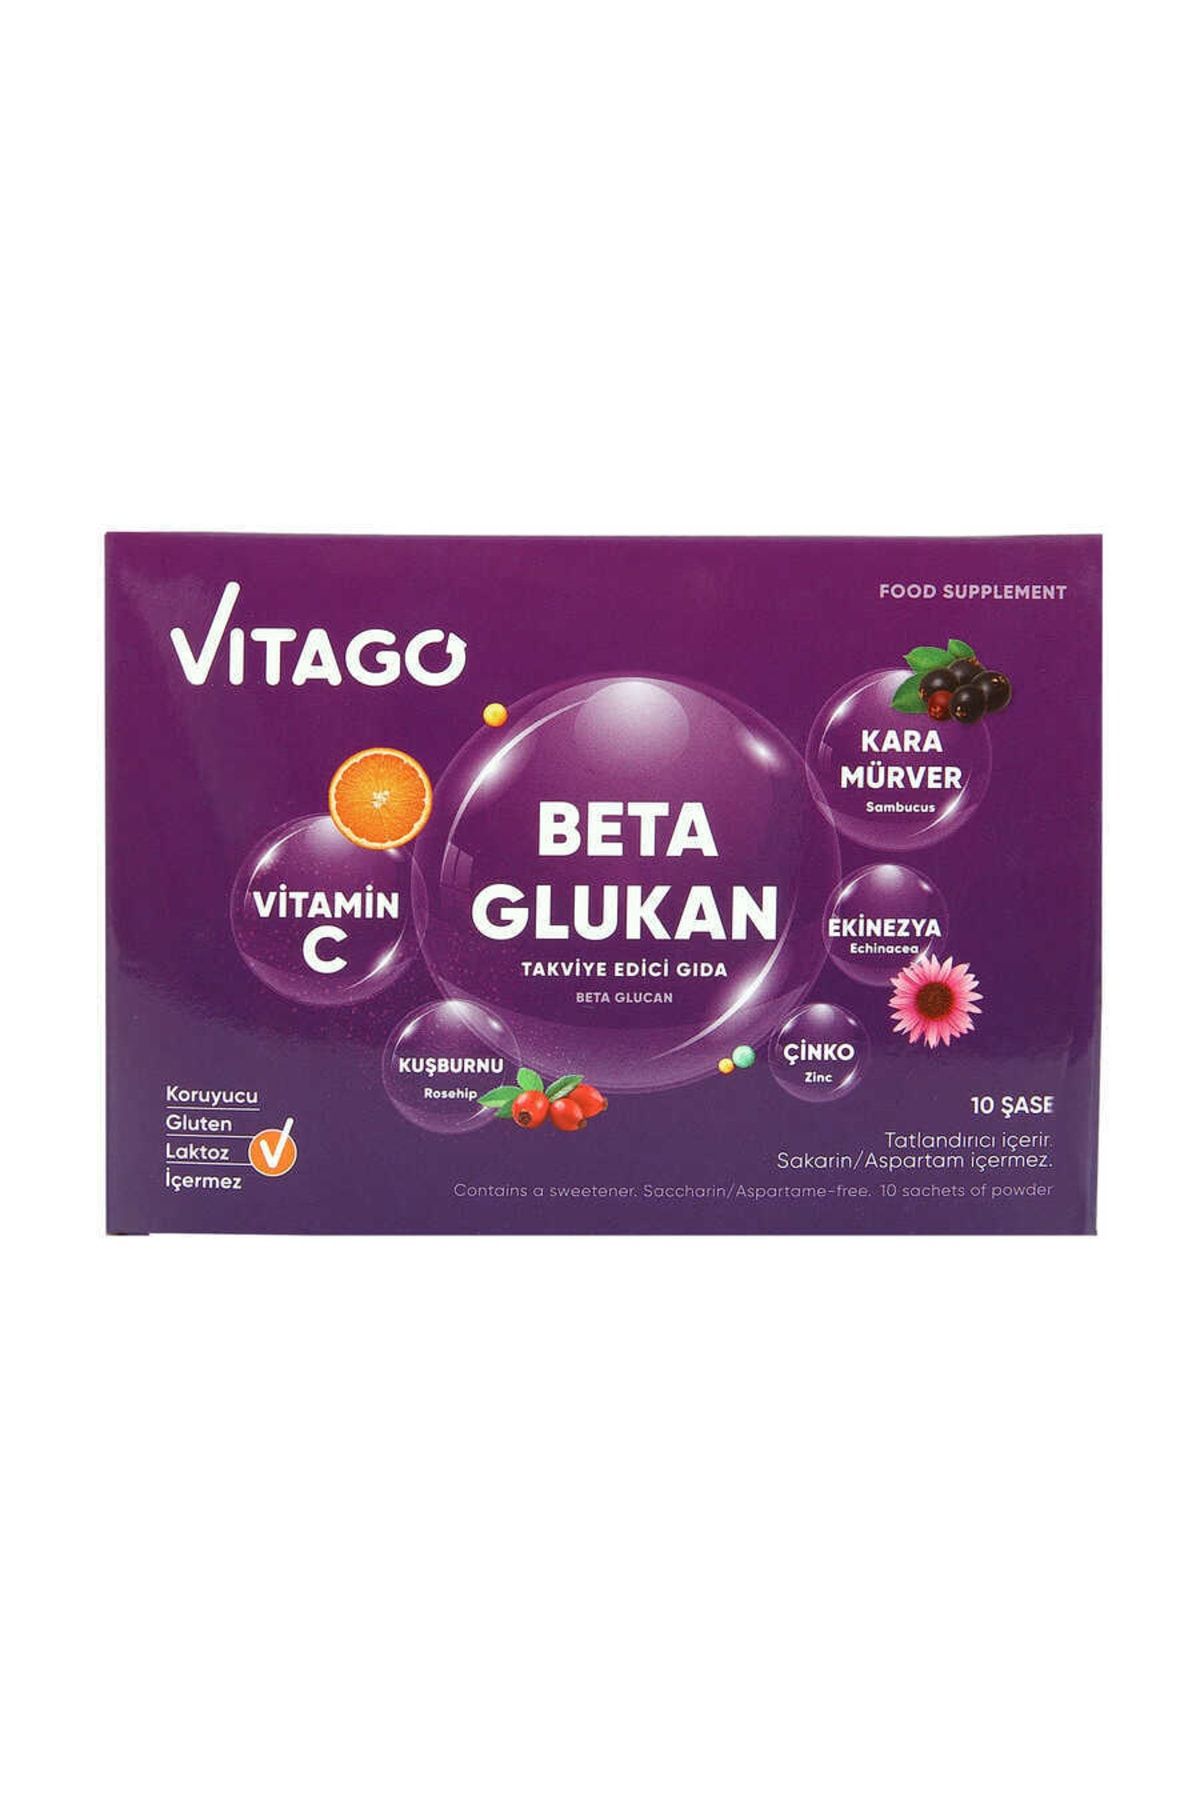 Vitago Beta Glukan Effervesan Toz Takviye Edici Gıda